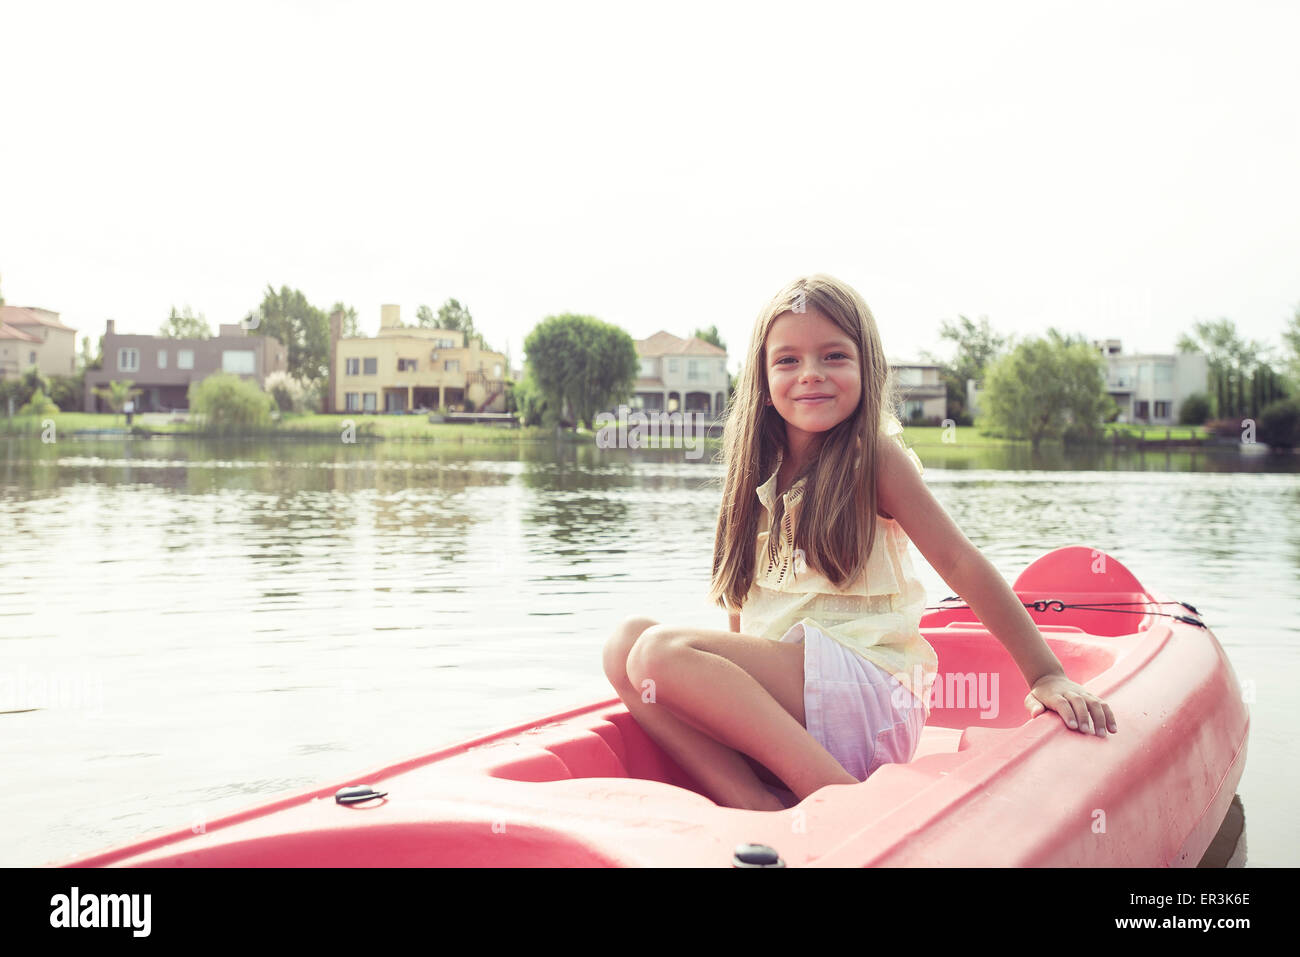 Girl kayaking on lake Stock Photo